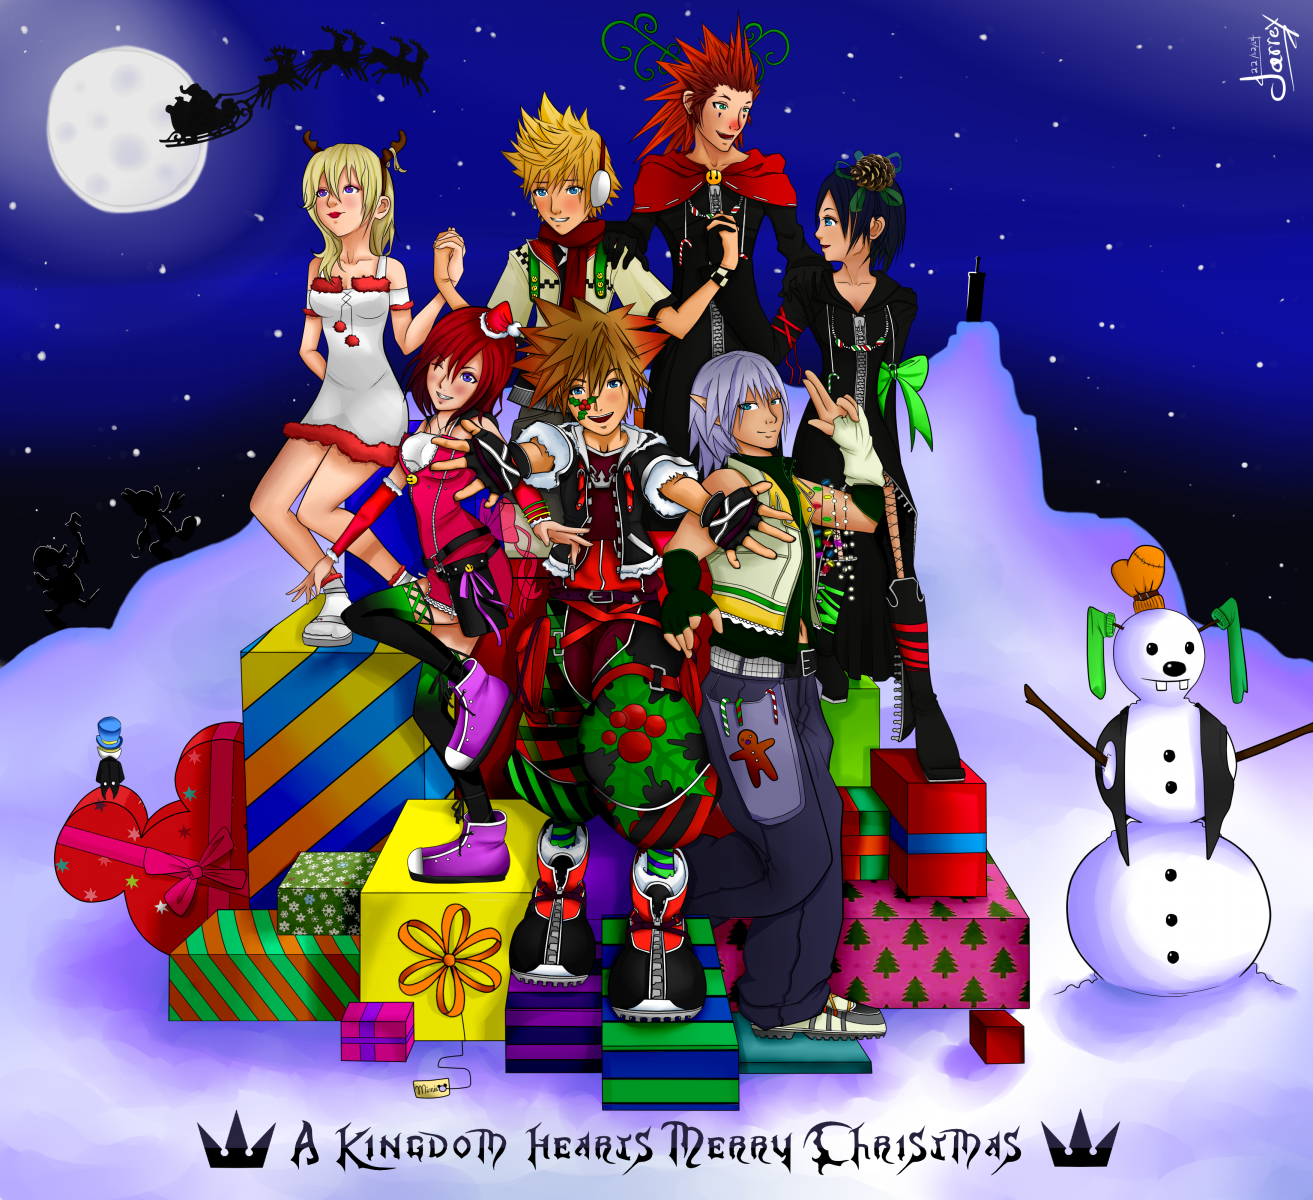 A Kingdom Hearts Merry Christmas!